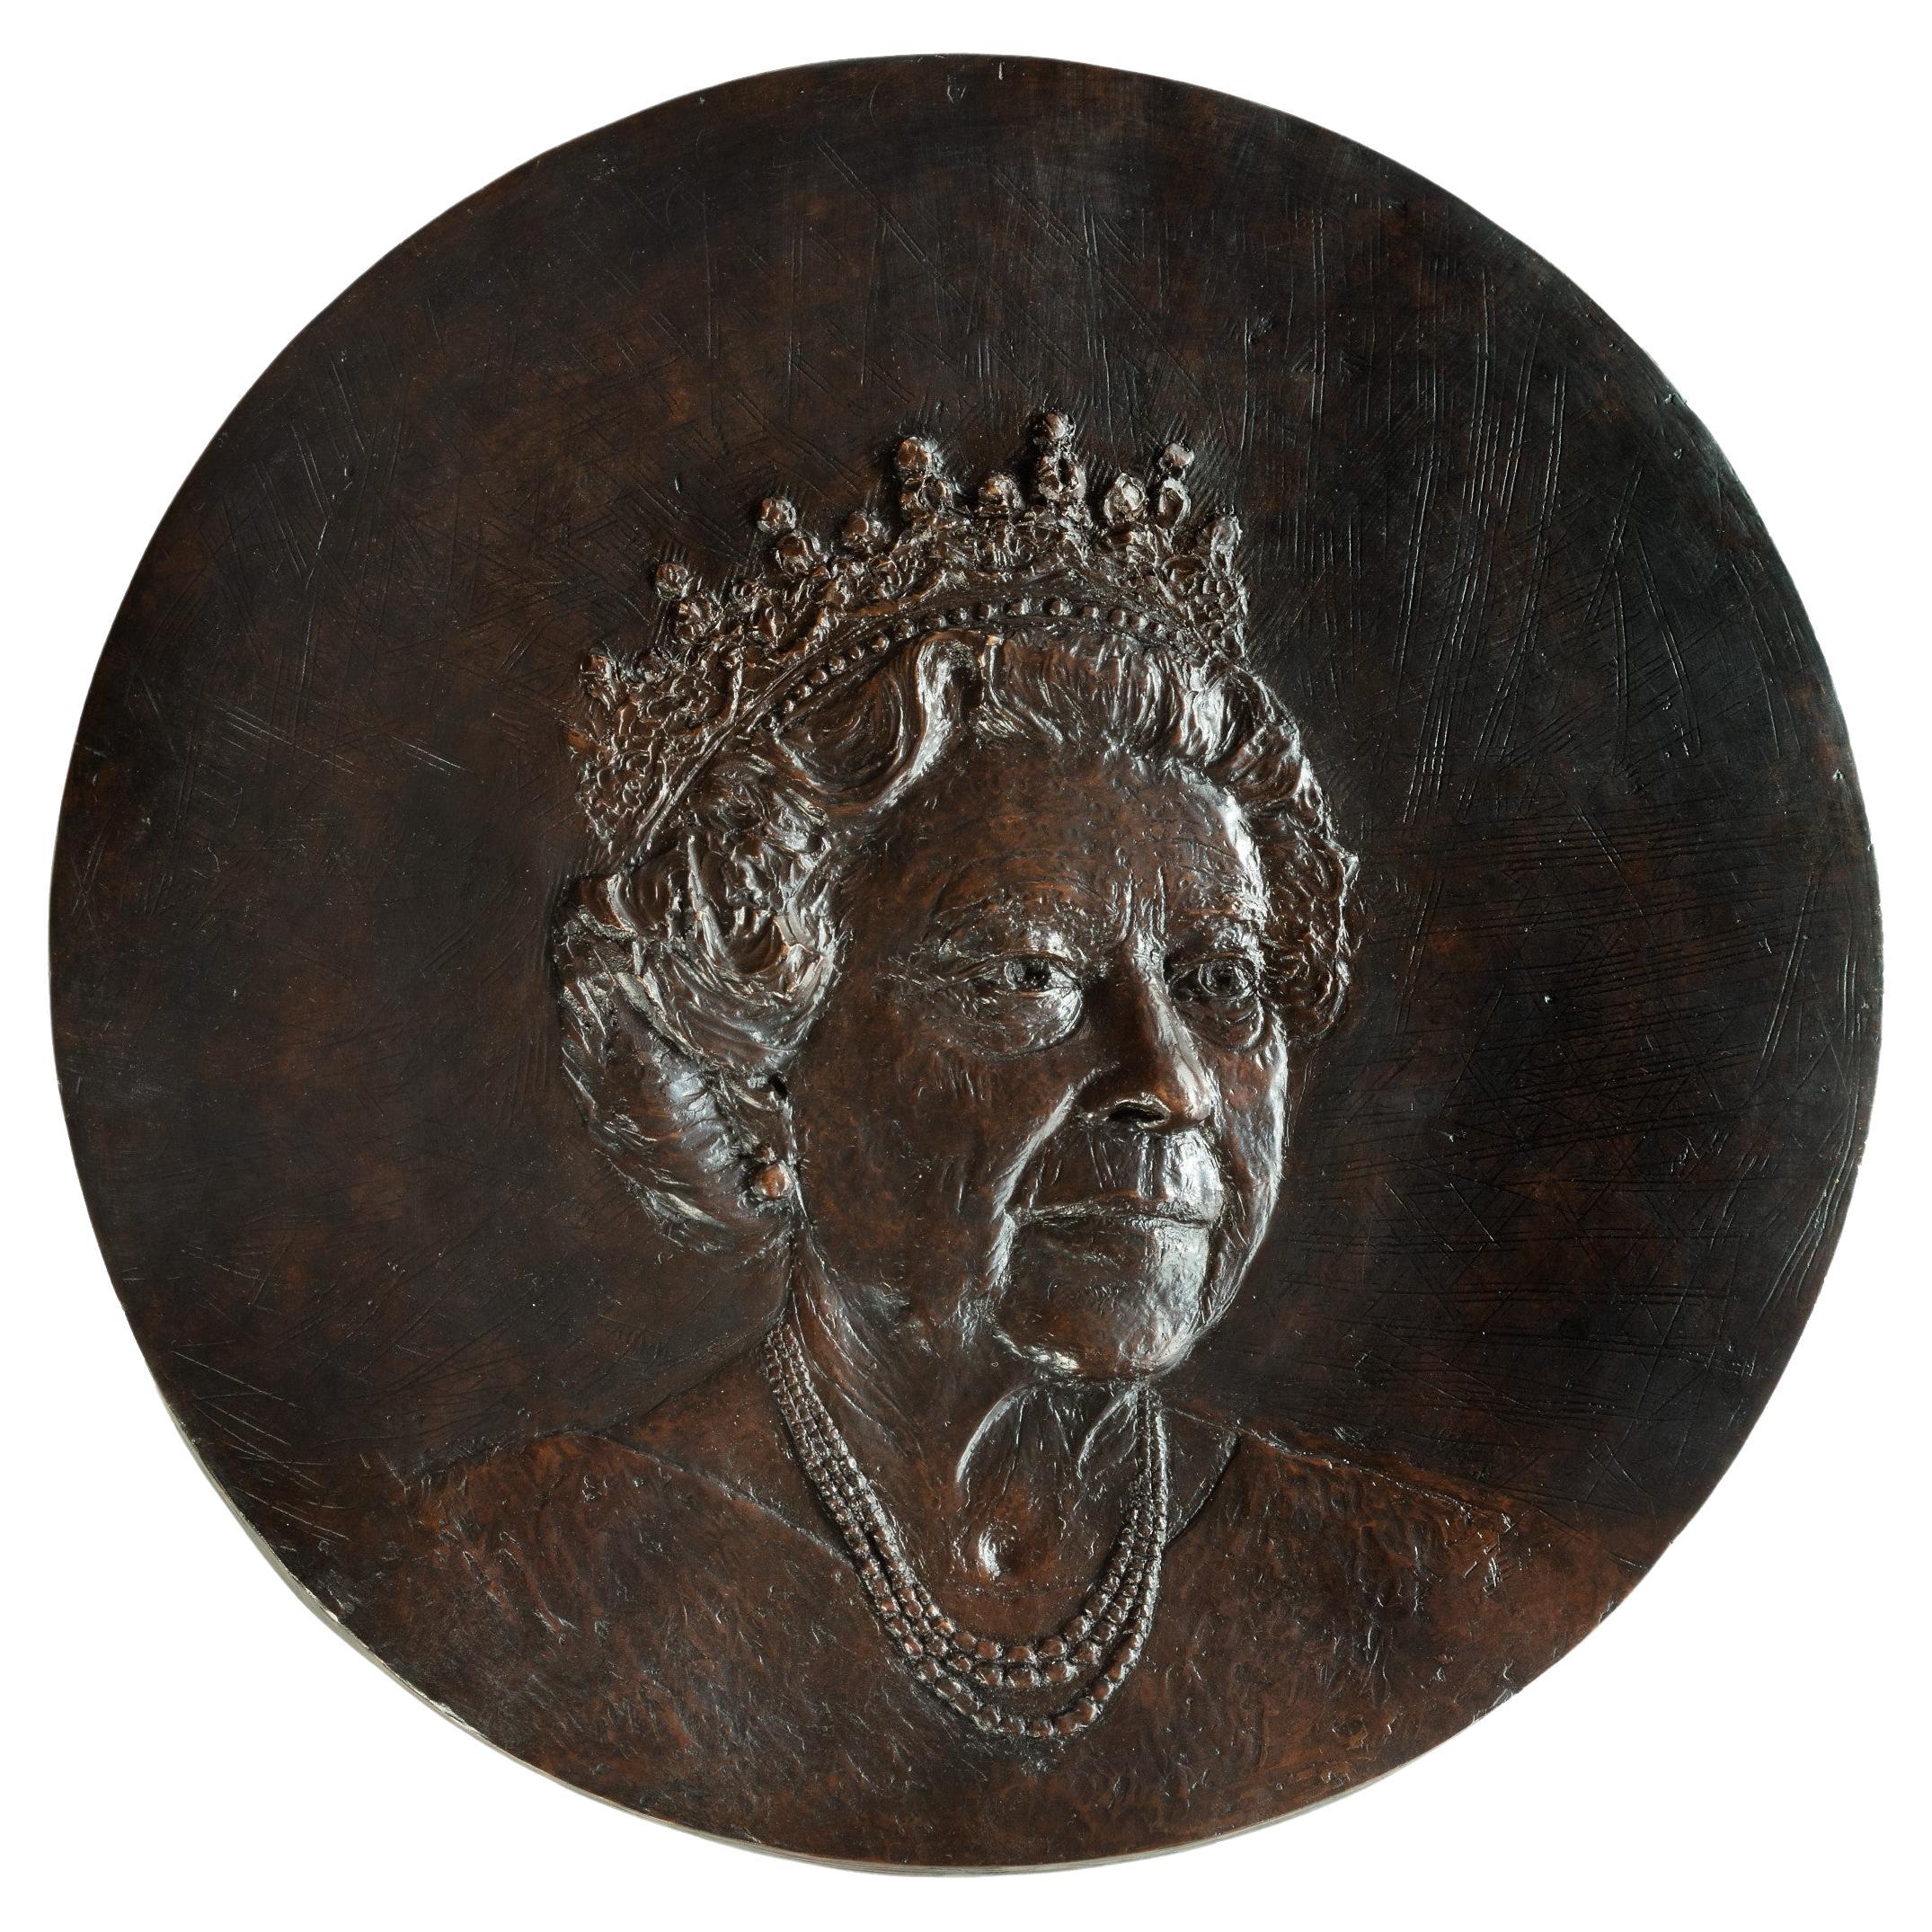 Vivien Mallock: Queen Elizabeth II’s Diamond Jubilee Portrait Roundel, 2012